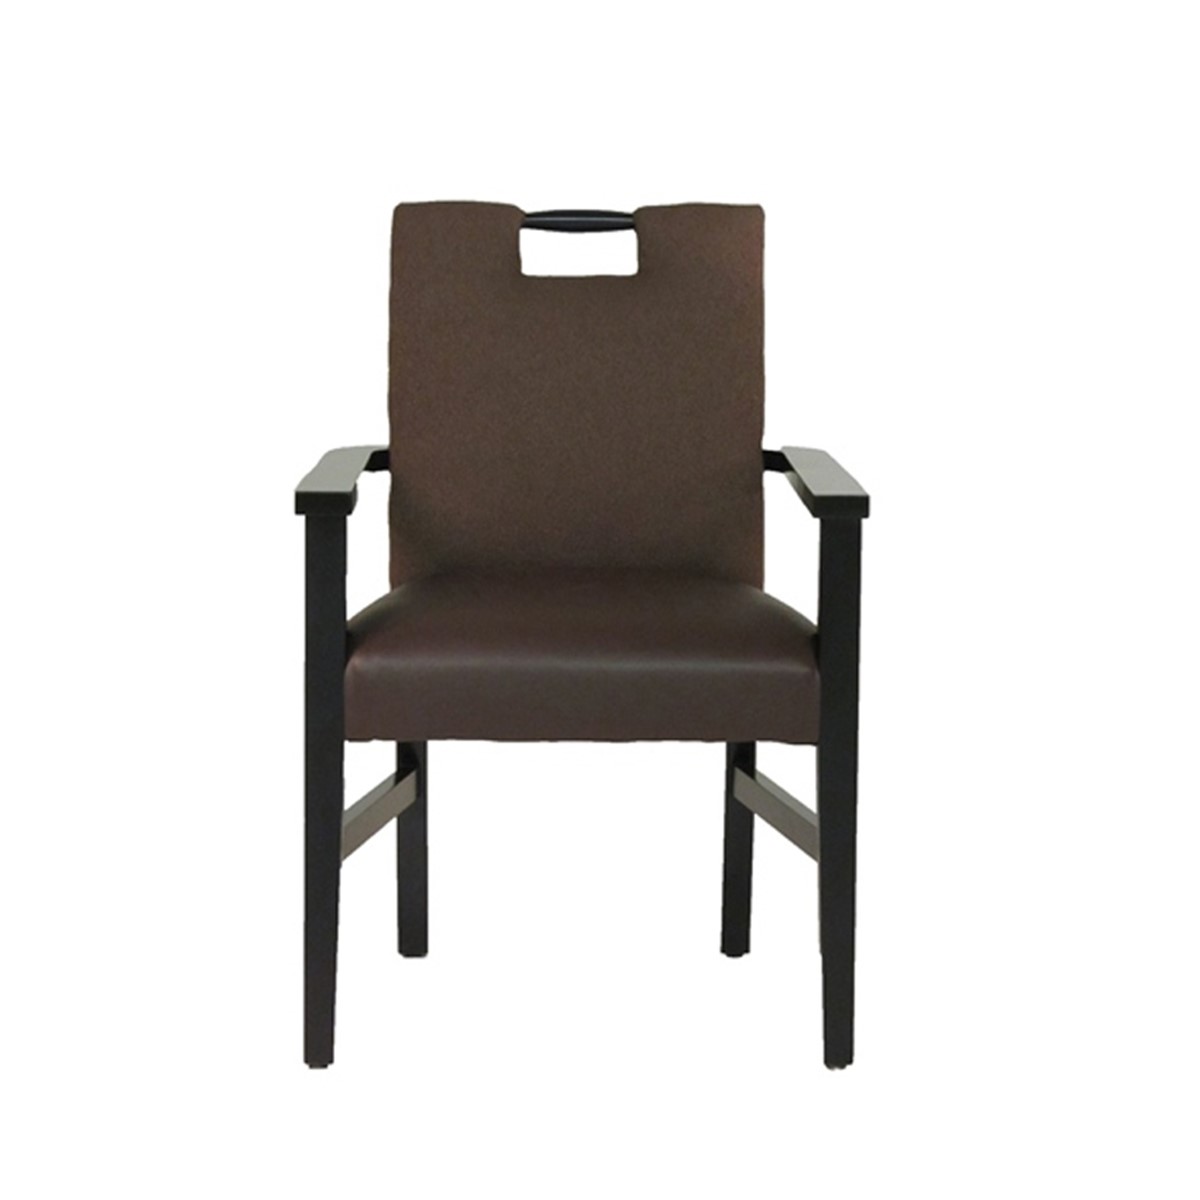 Arm Chair Model 3068A